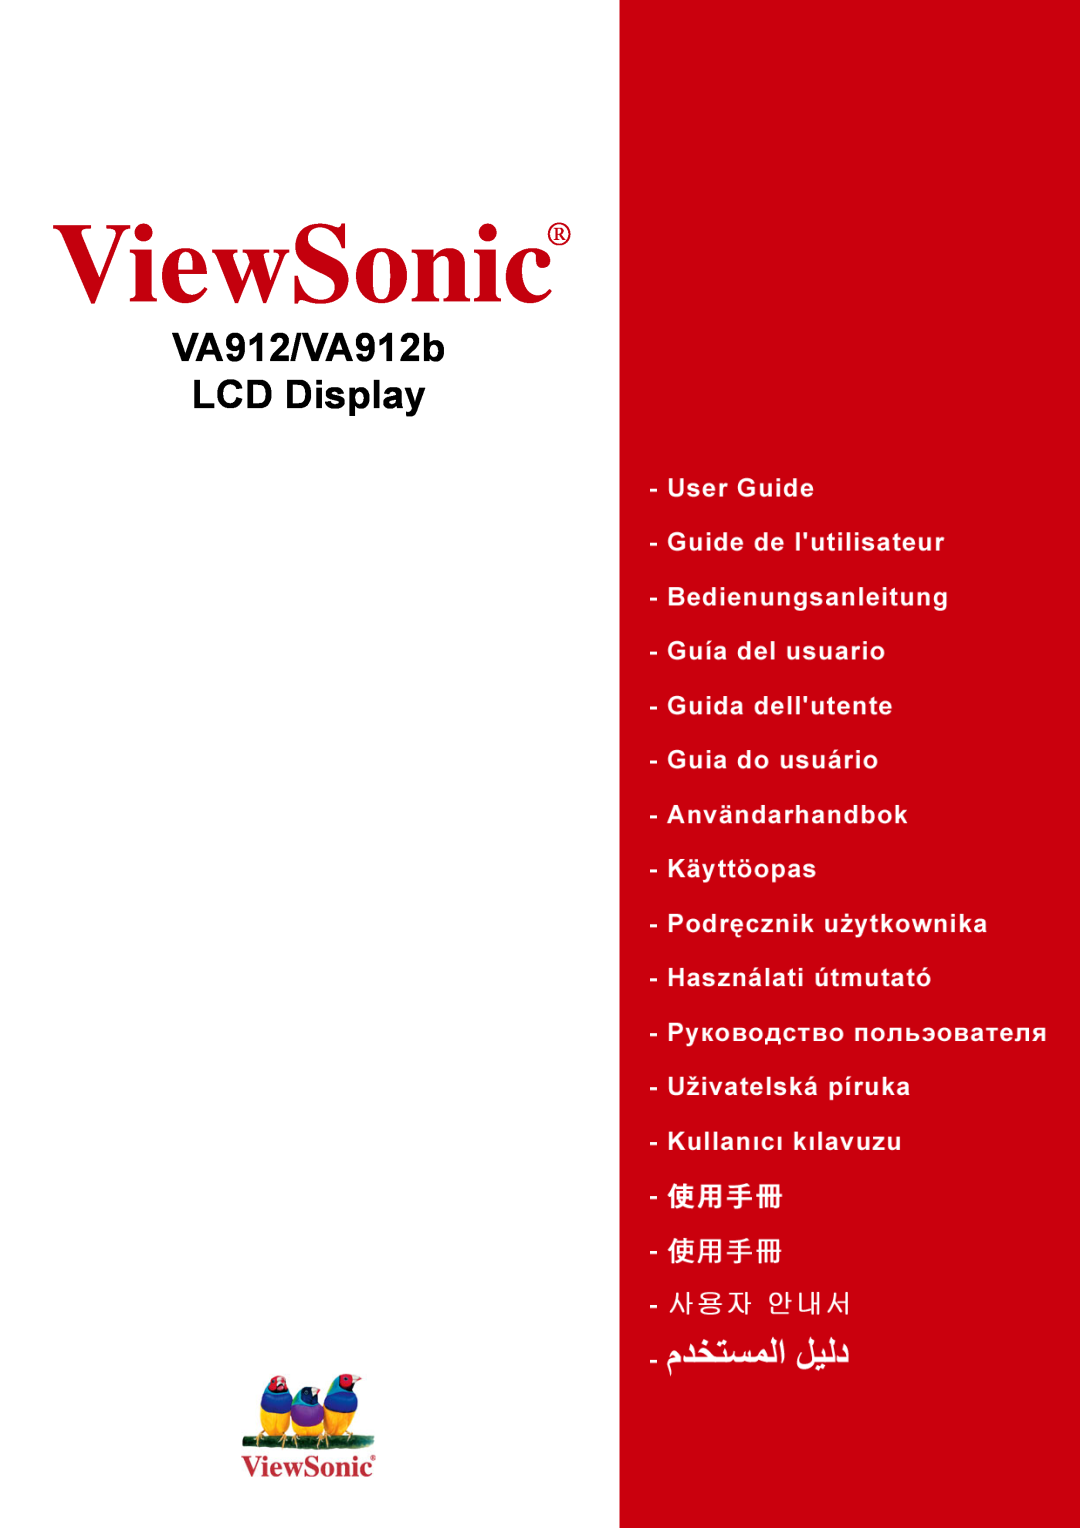 ViewSonic VA912-1, VA912b-1 manual ViewSonic, VA912/VA912b LCD Display 